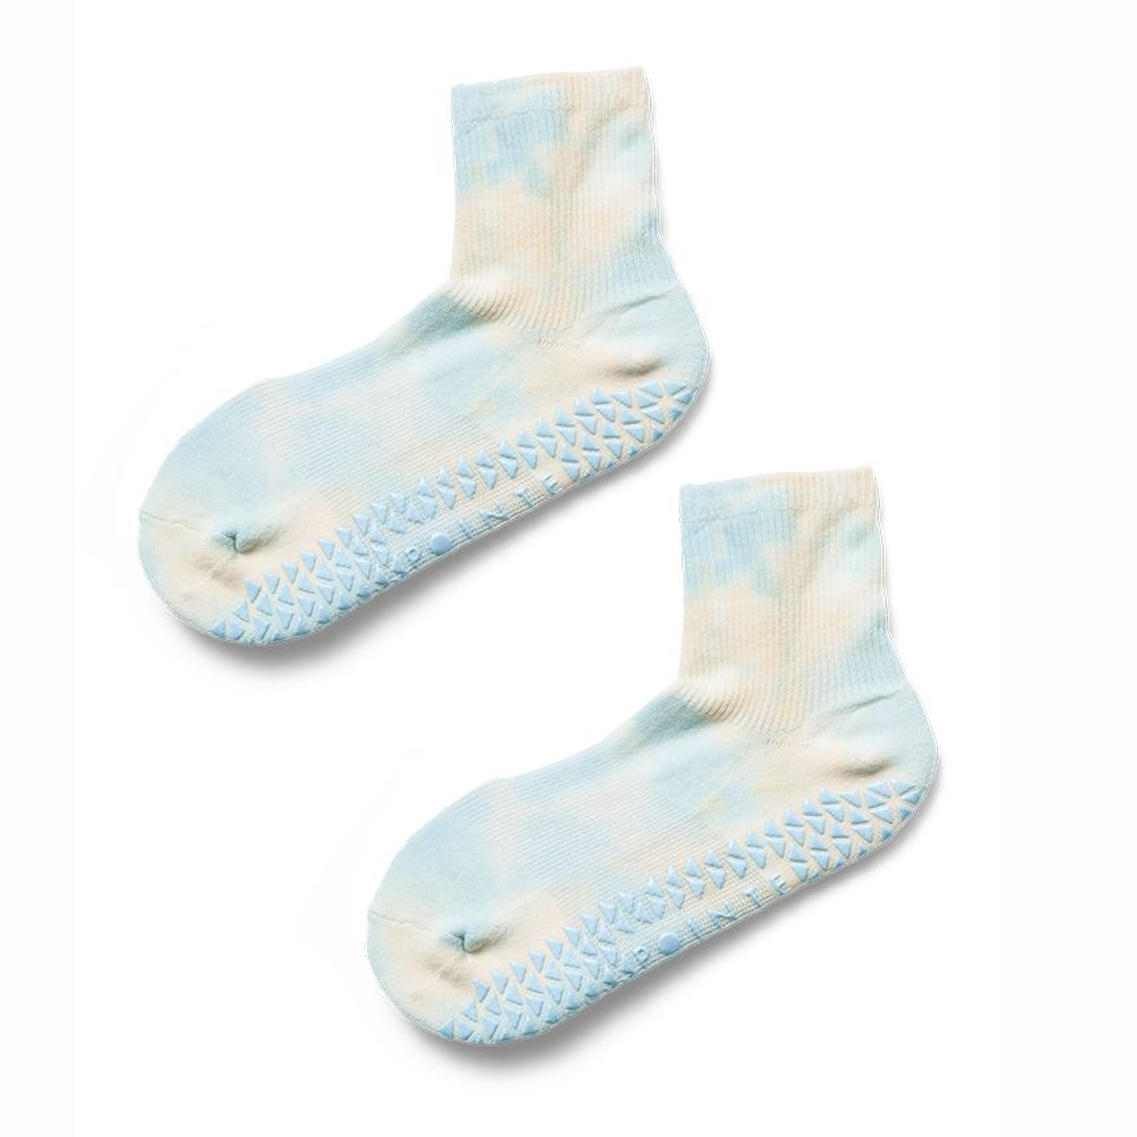 Bingirl 1 Pair Women Sports Yoga Socks Breathable Wear-resistant Non-slip  Professional Ballet Dance Socks 